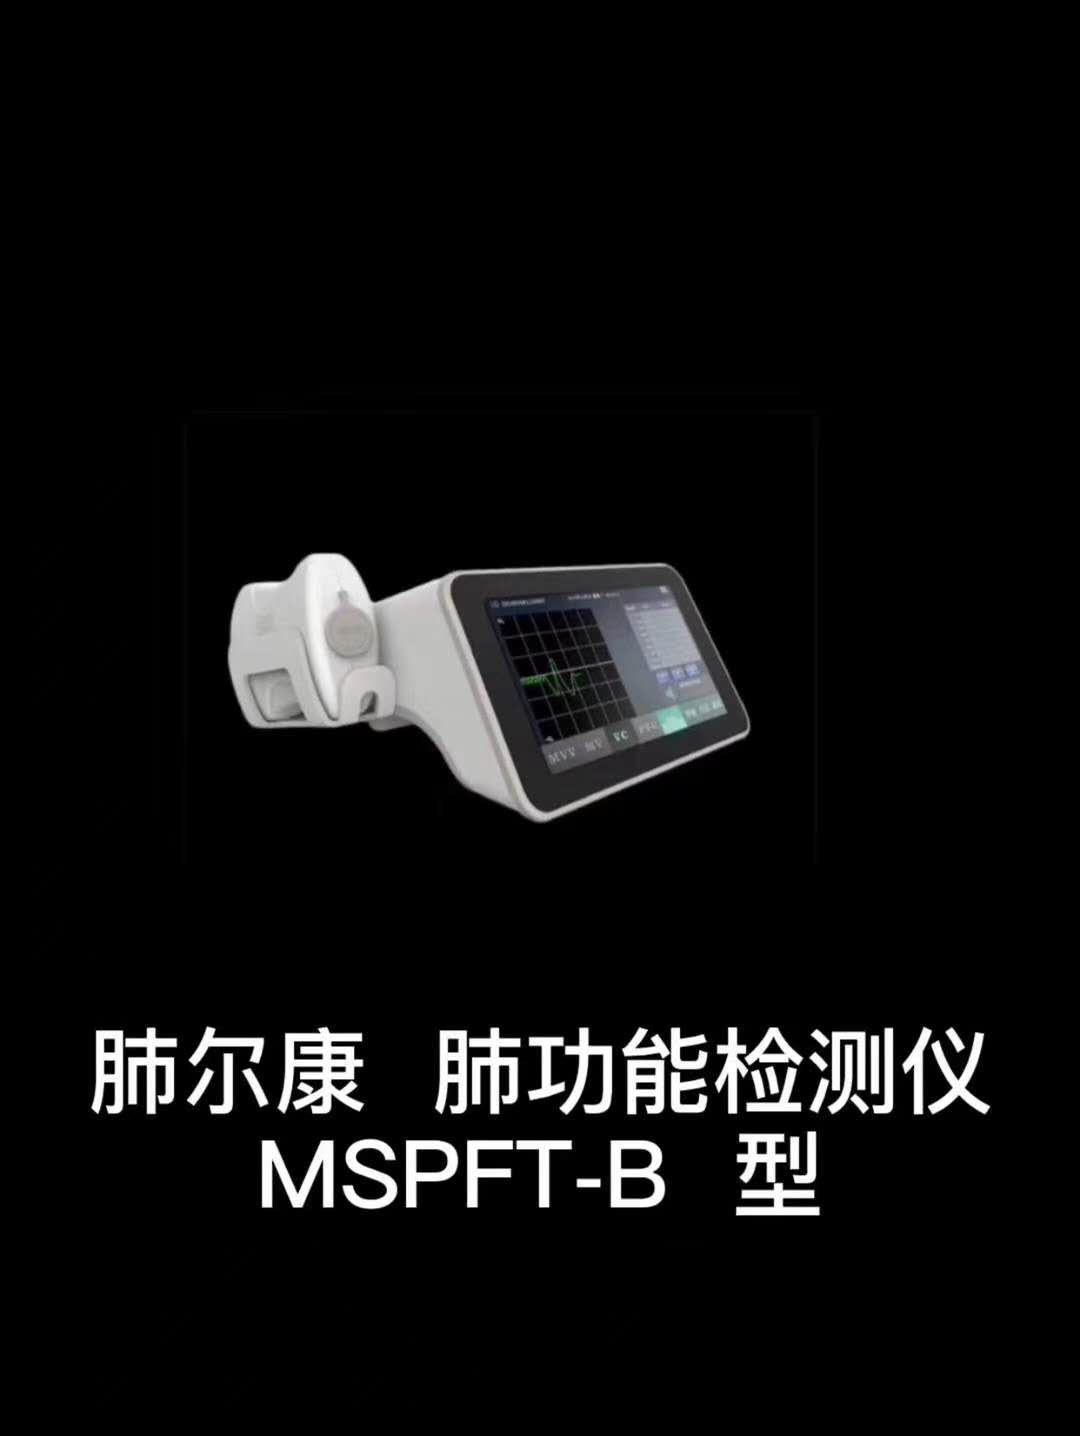 肺尔康  肺功能检测仪 MSPFT-B型